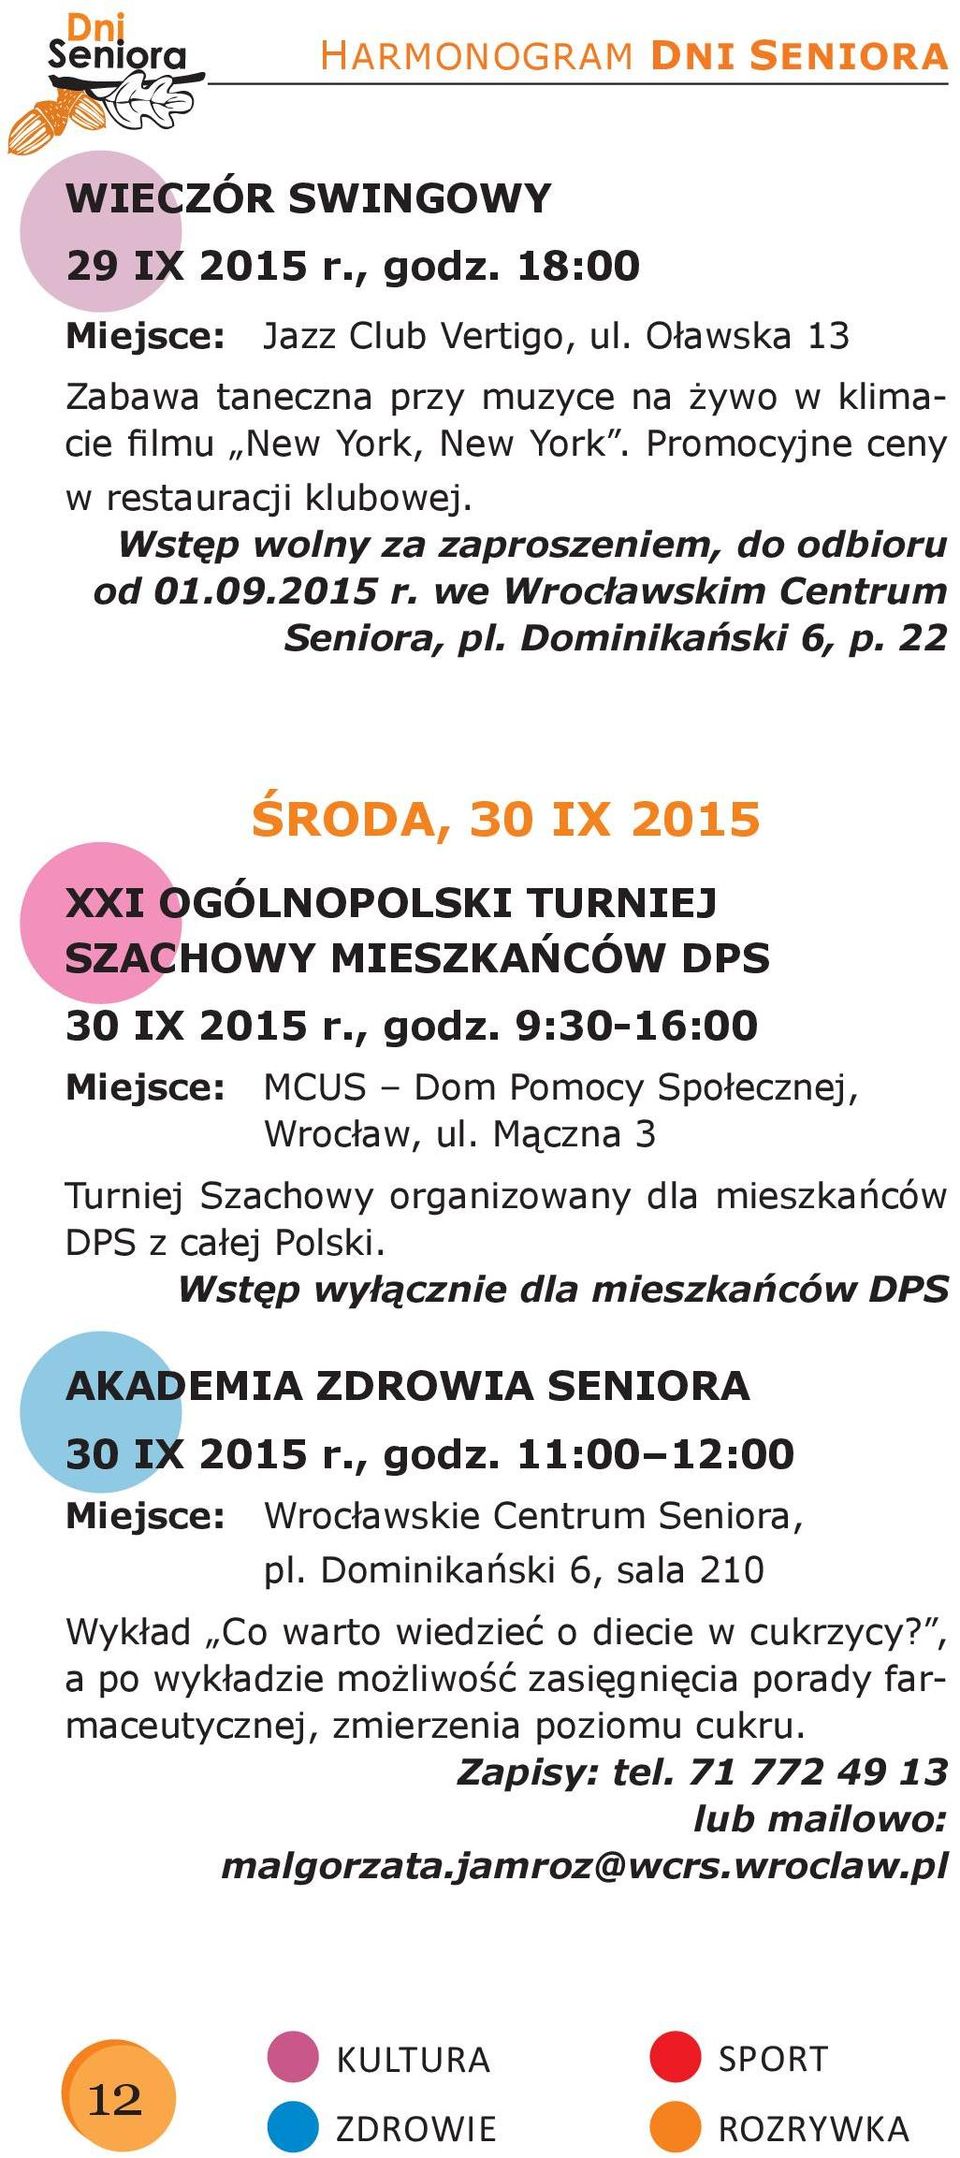 22 ŚRODA, 30 IX 2015 XXI OGÓLNOPOLSKI TURNIEJ SZACHOWY MIESZKAŃCÓW DPS 30 IX 2015 r., godz. 9:30-16:00 Miejsce: MCUS Dom Pomocy Społecznej, Wrocław, ul.